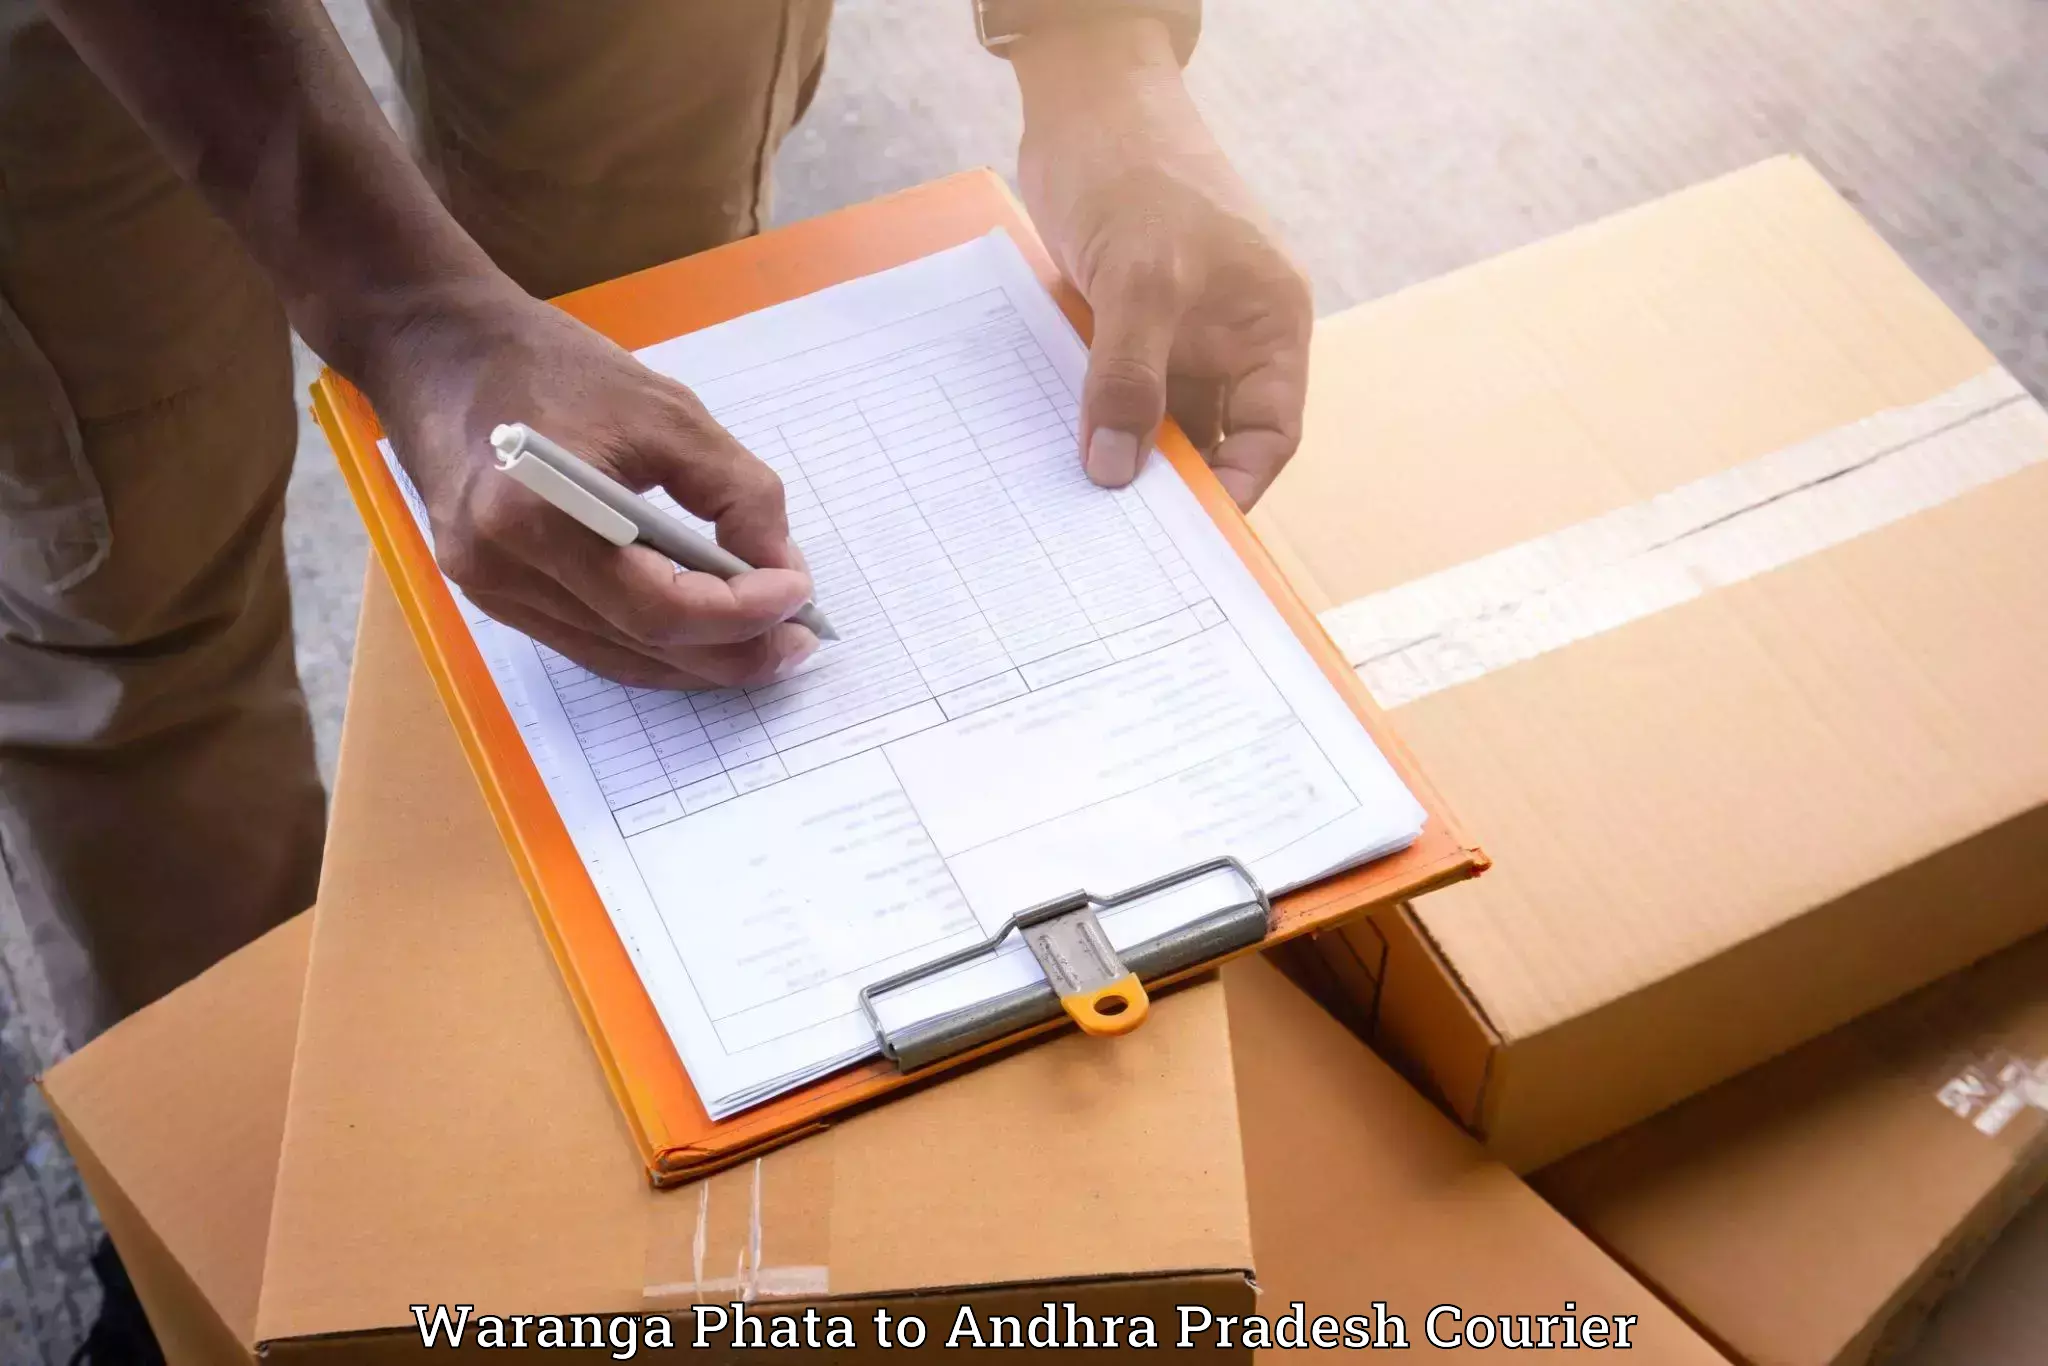 Furniture moving experts Waranga Phata to Chittoor